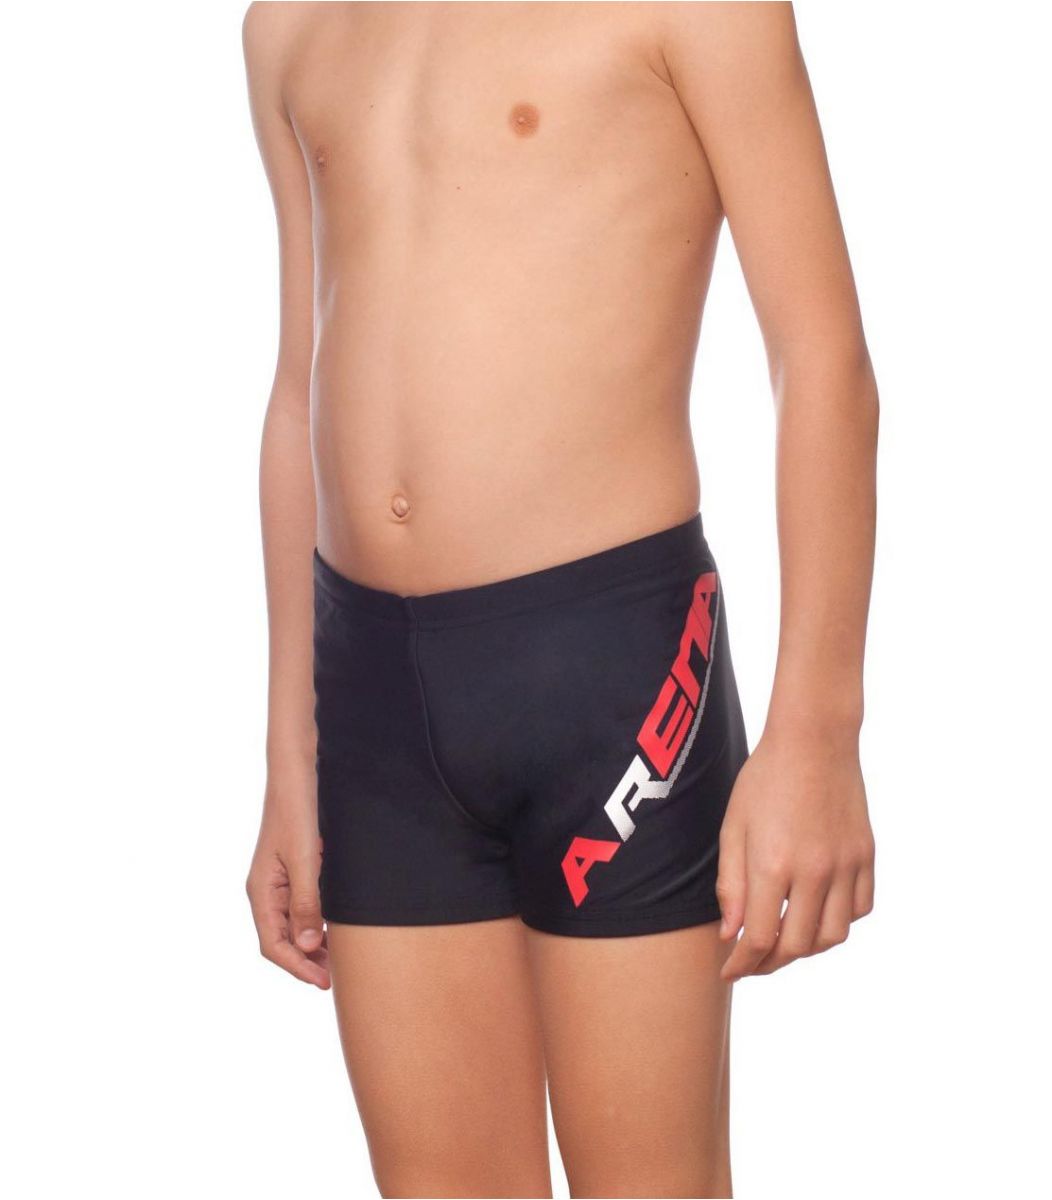  Μαγιό Arena Arena Boy Swimwear Short 2162150-1